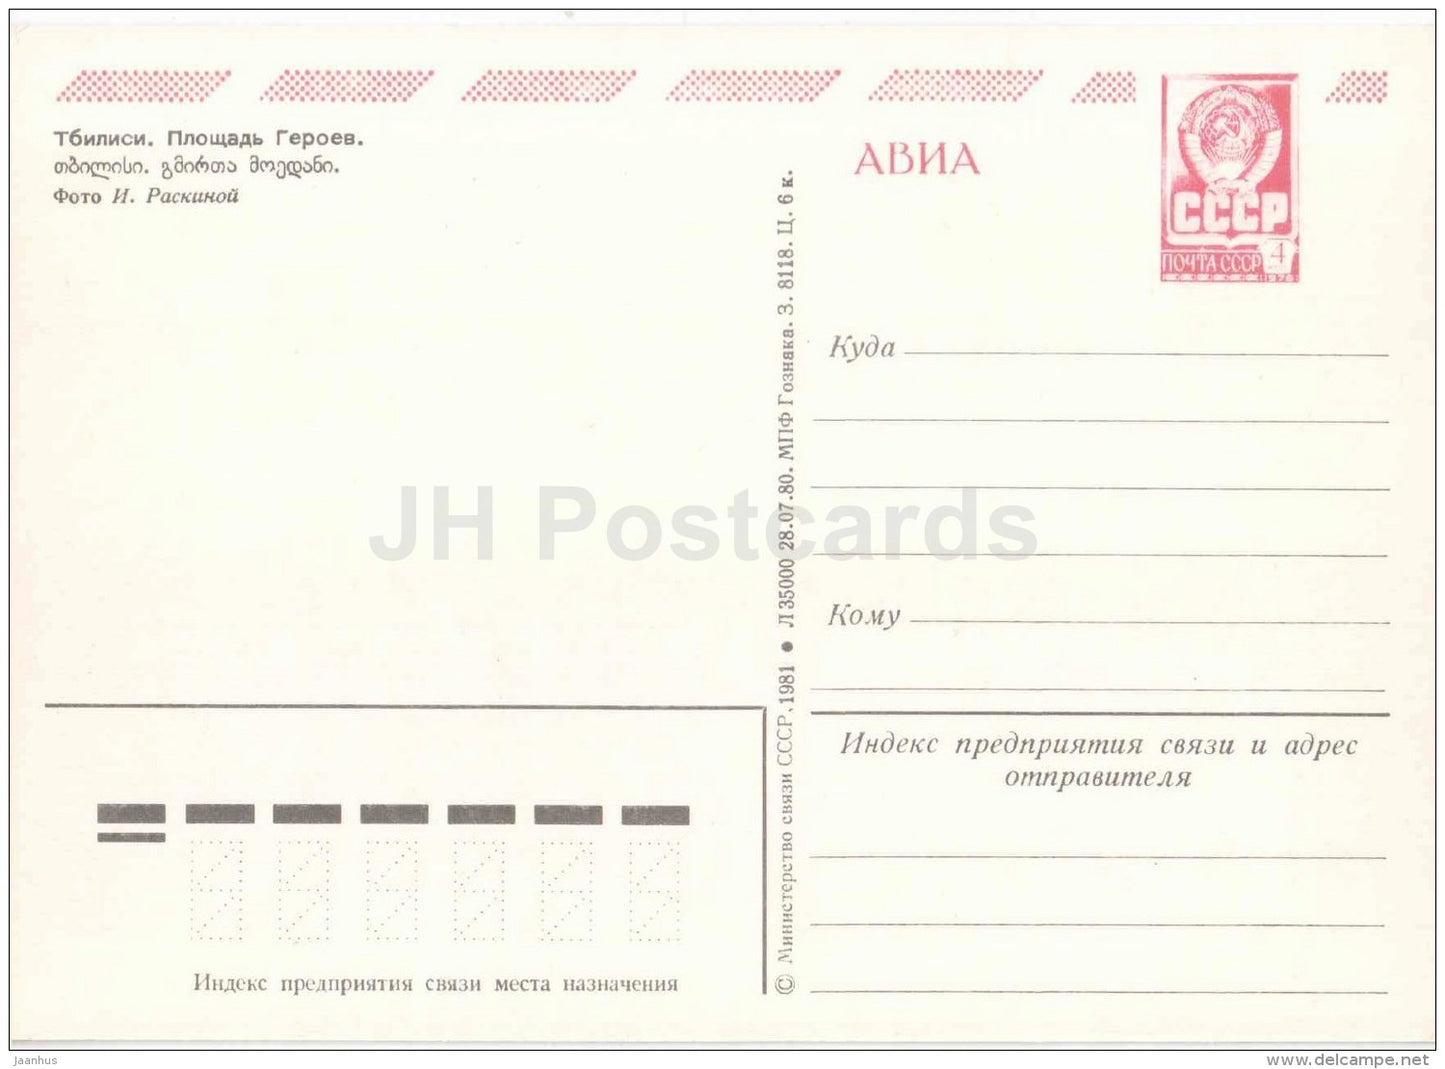 Heroe´s square - bus Ikarus - Tbilisi - postal stationery - AVIA - 1981 - Georgia USSR - unused - JH Postcards